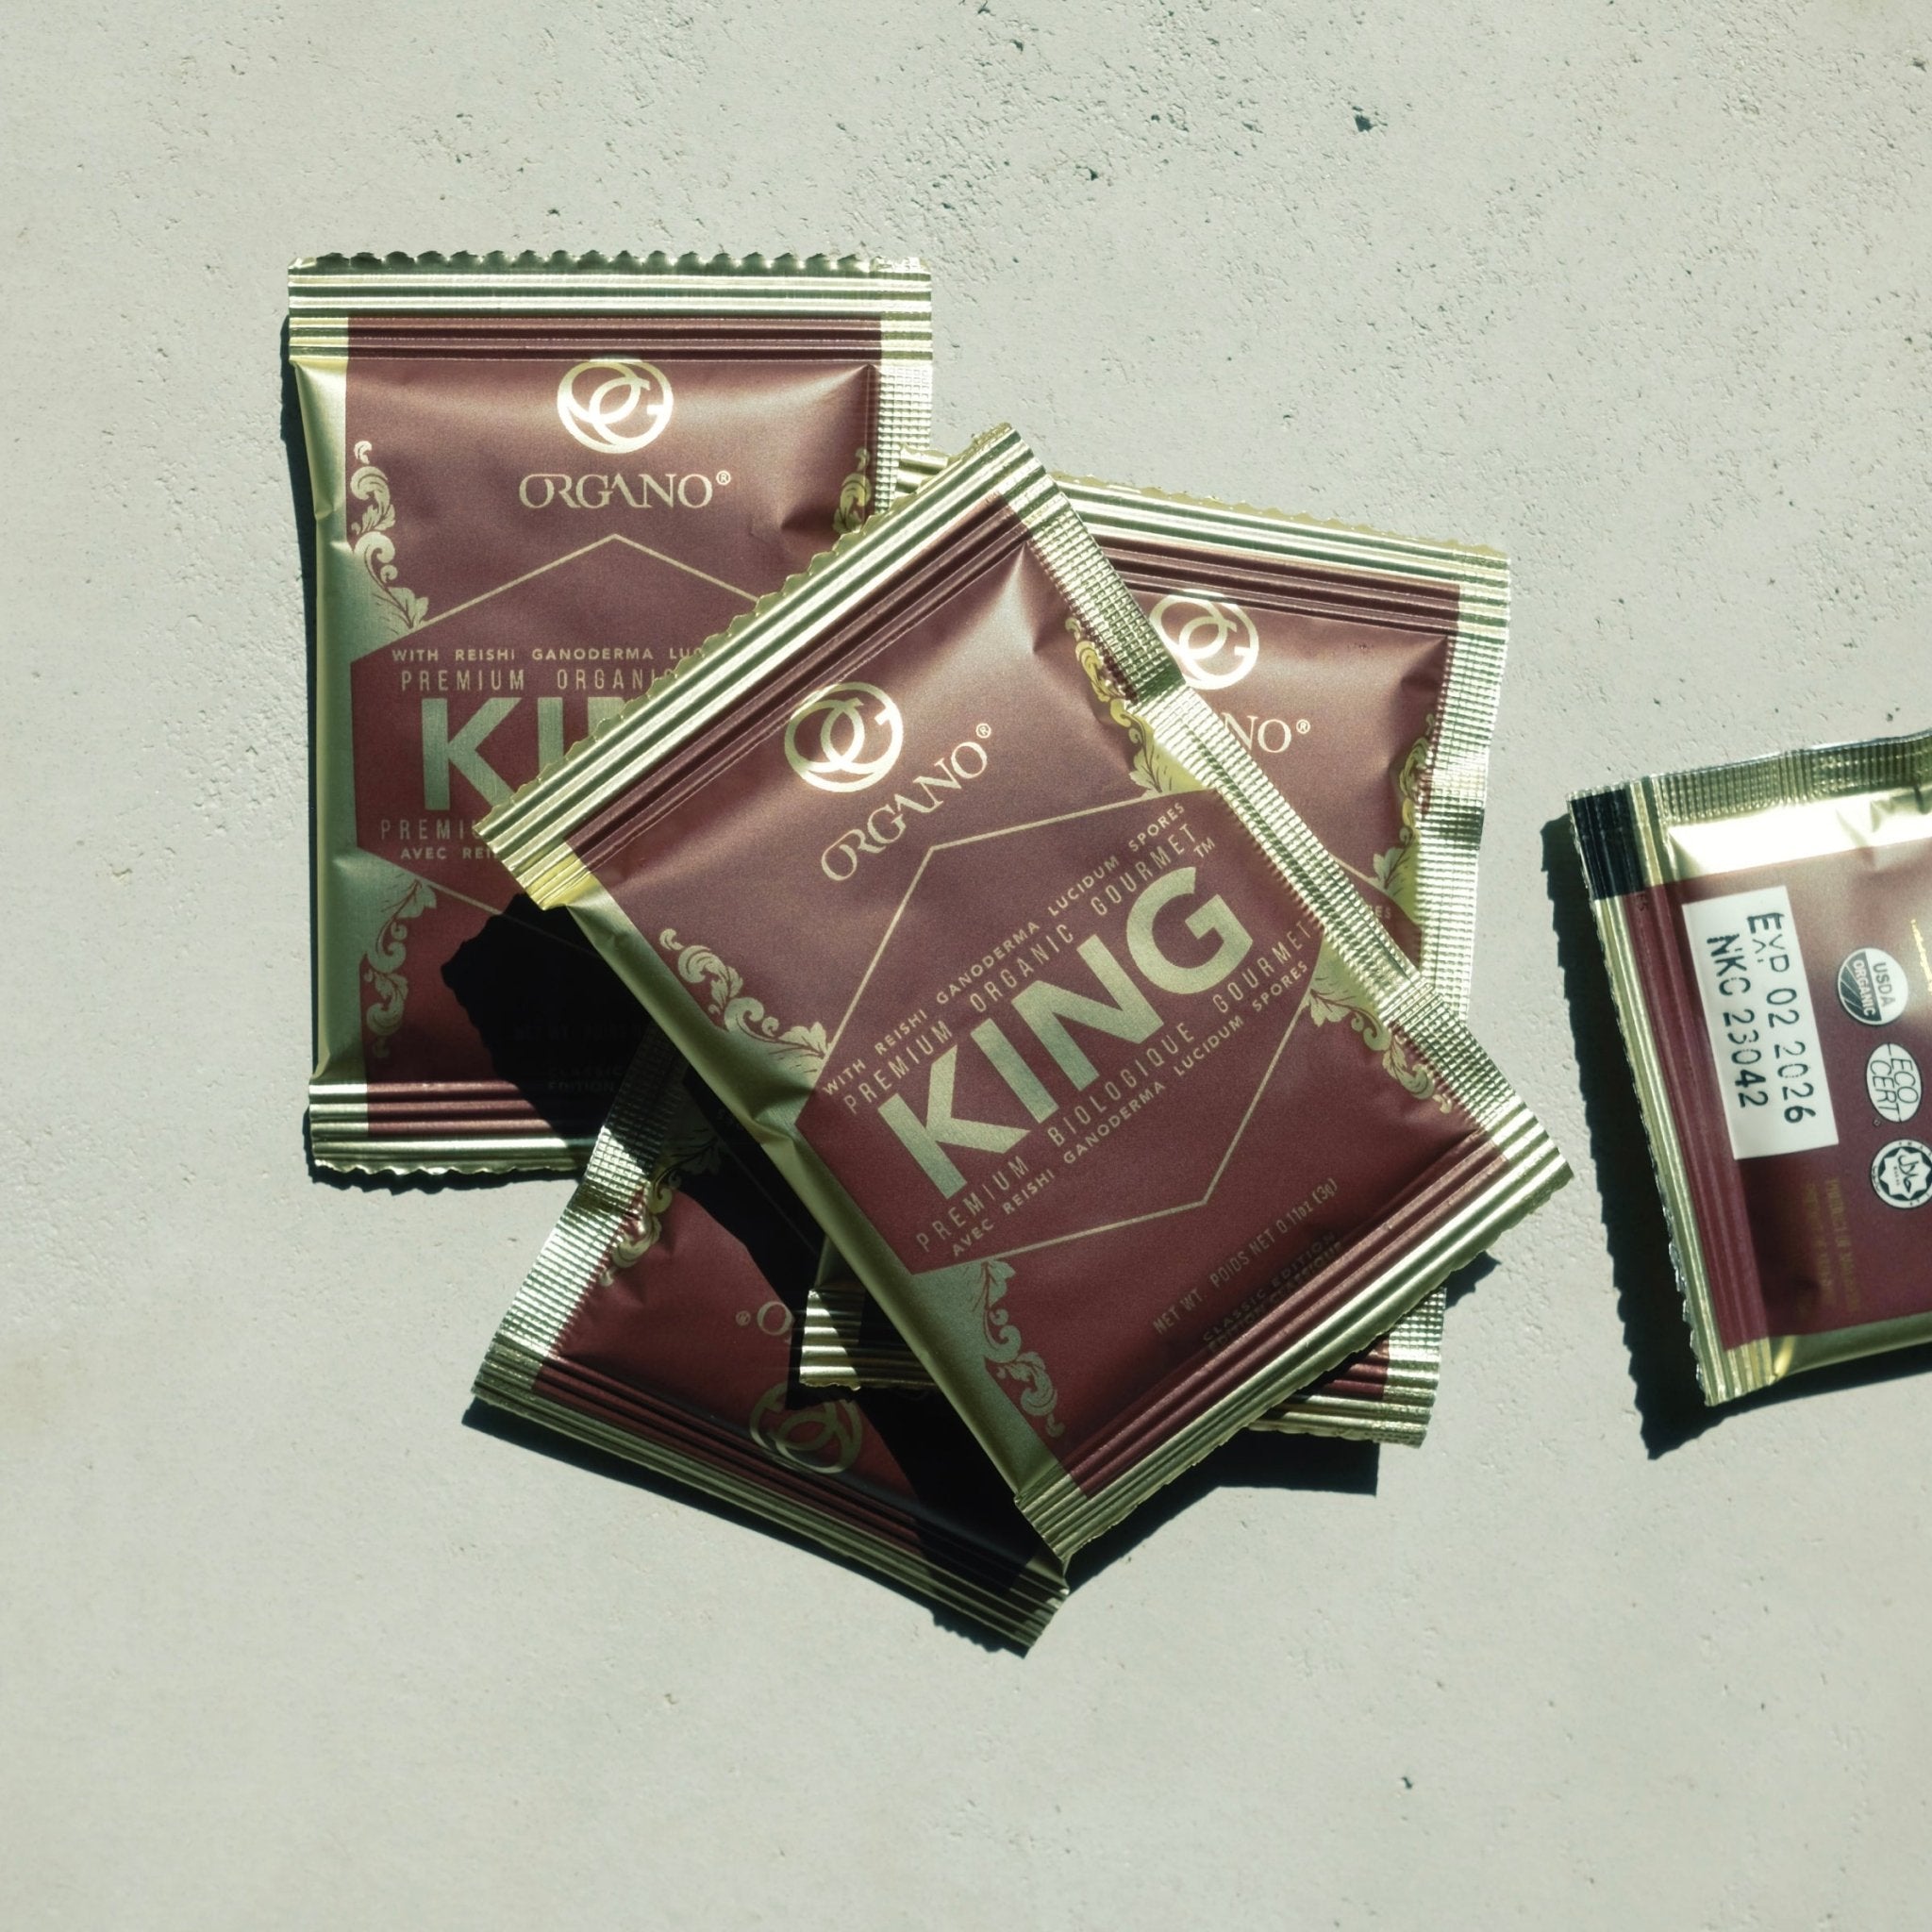 Organo King Coffee - Ruti